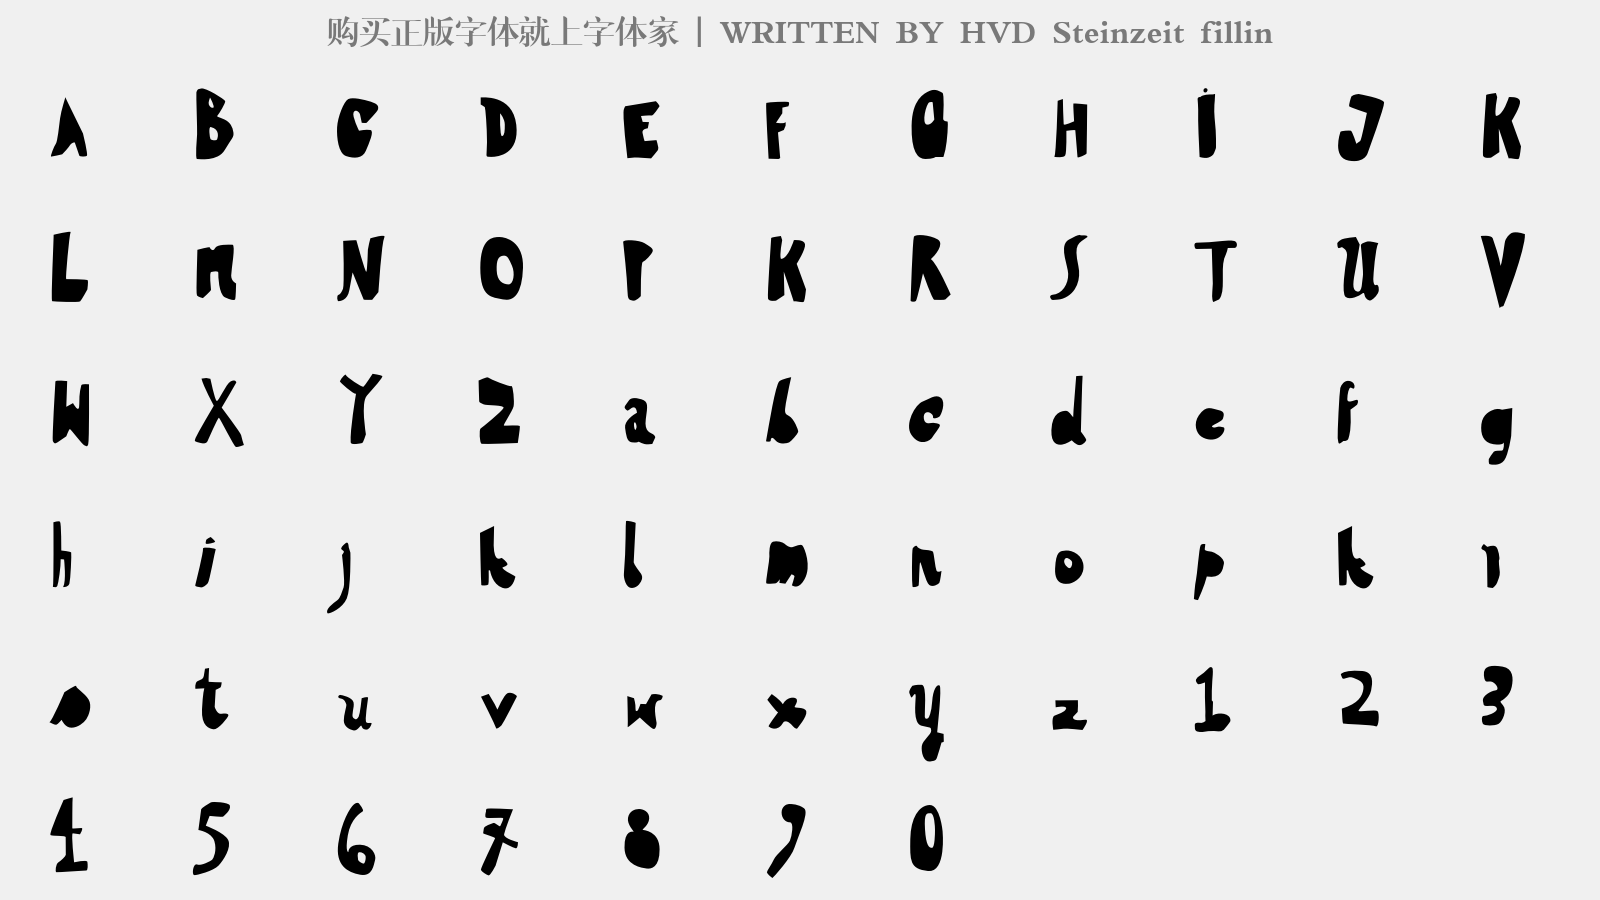 HVD Steinzeit fillin - 大写字母/小写字母/数字